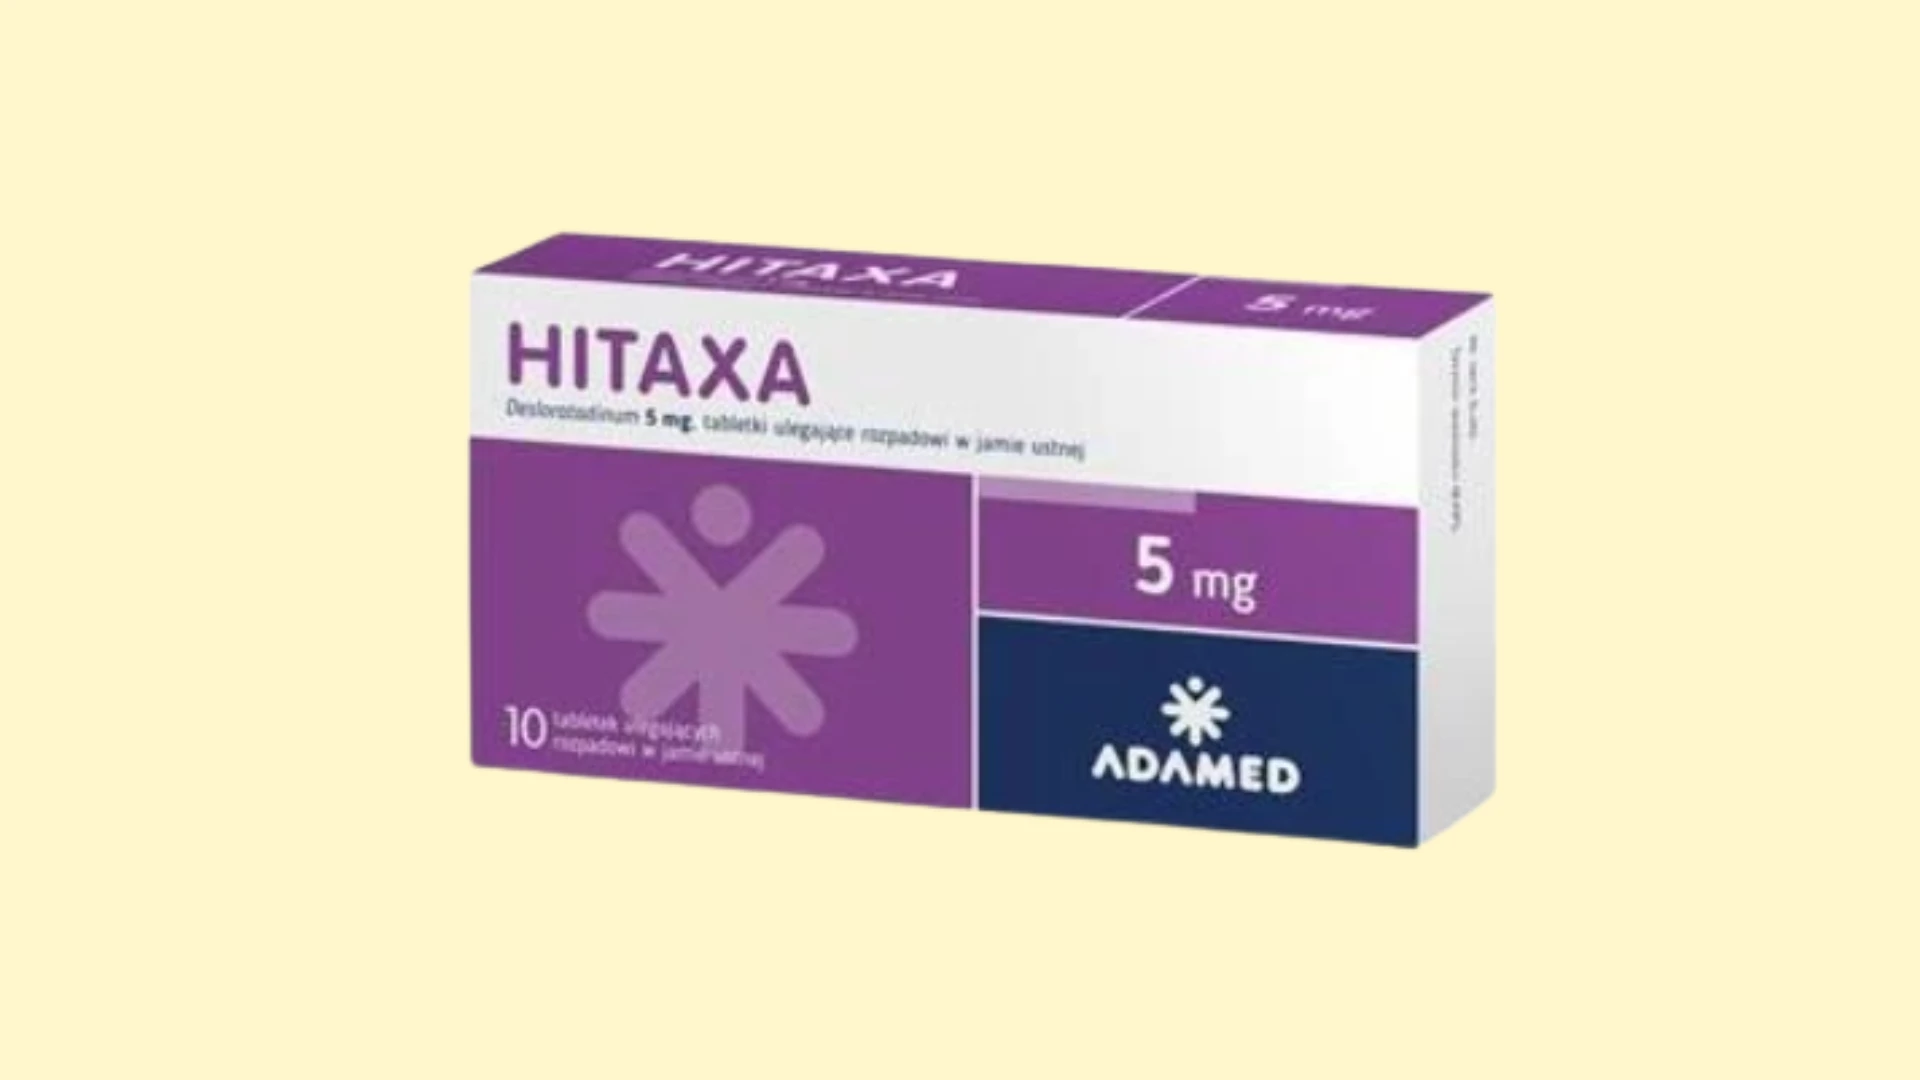 Hitaxa - Recepta online - e-Recepta z konsultacją | cena, dawkowanie, przeciwwskazania